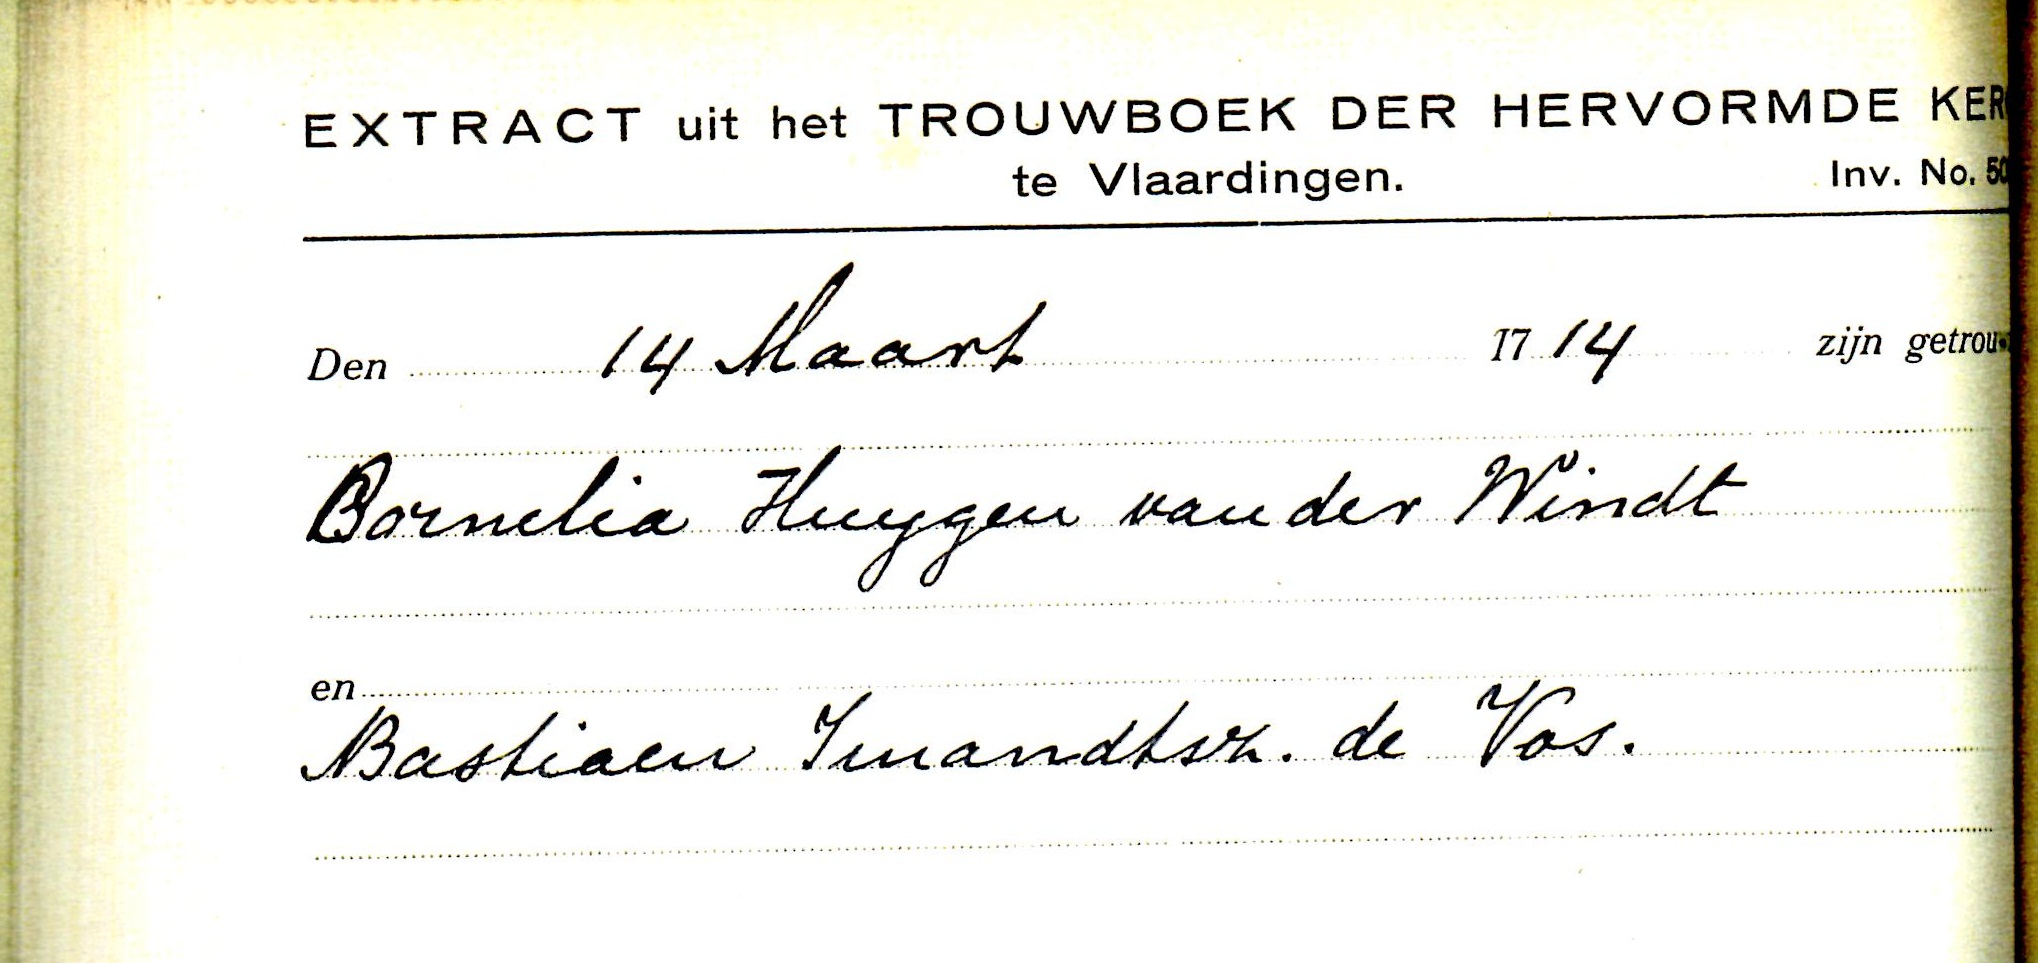 1714-03-14 Extract Trouwboek Cornelia Huijgensd van der Wint en Bastiaan IJmensz de Vos